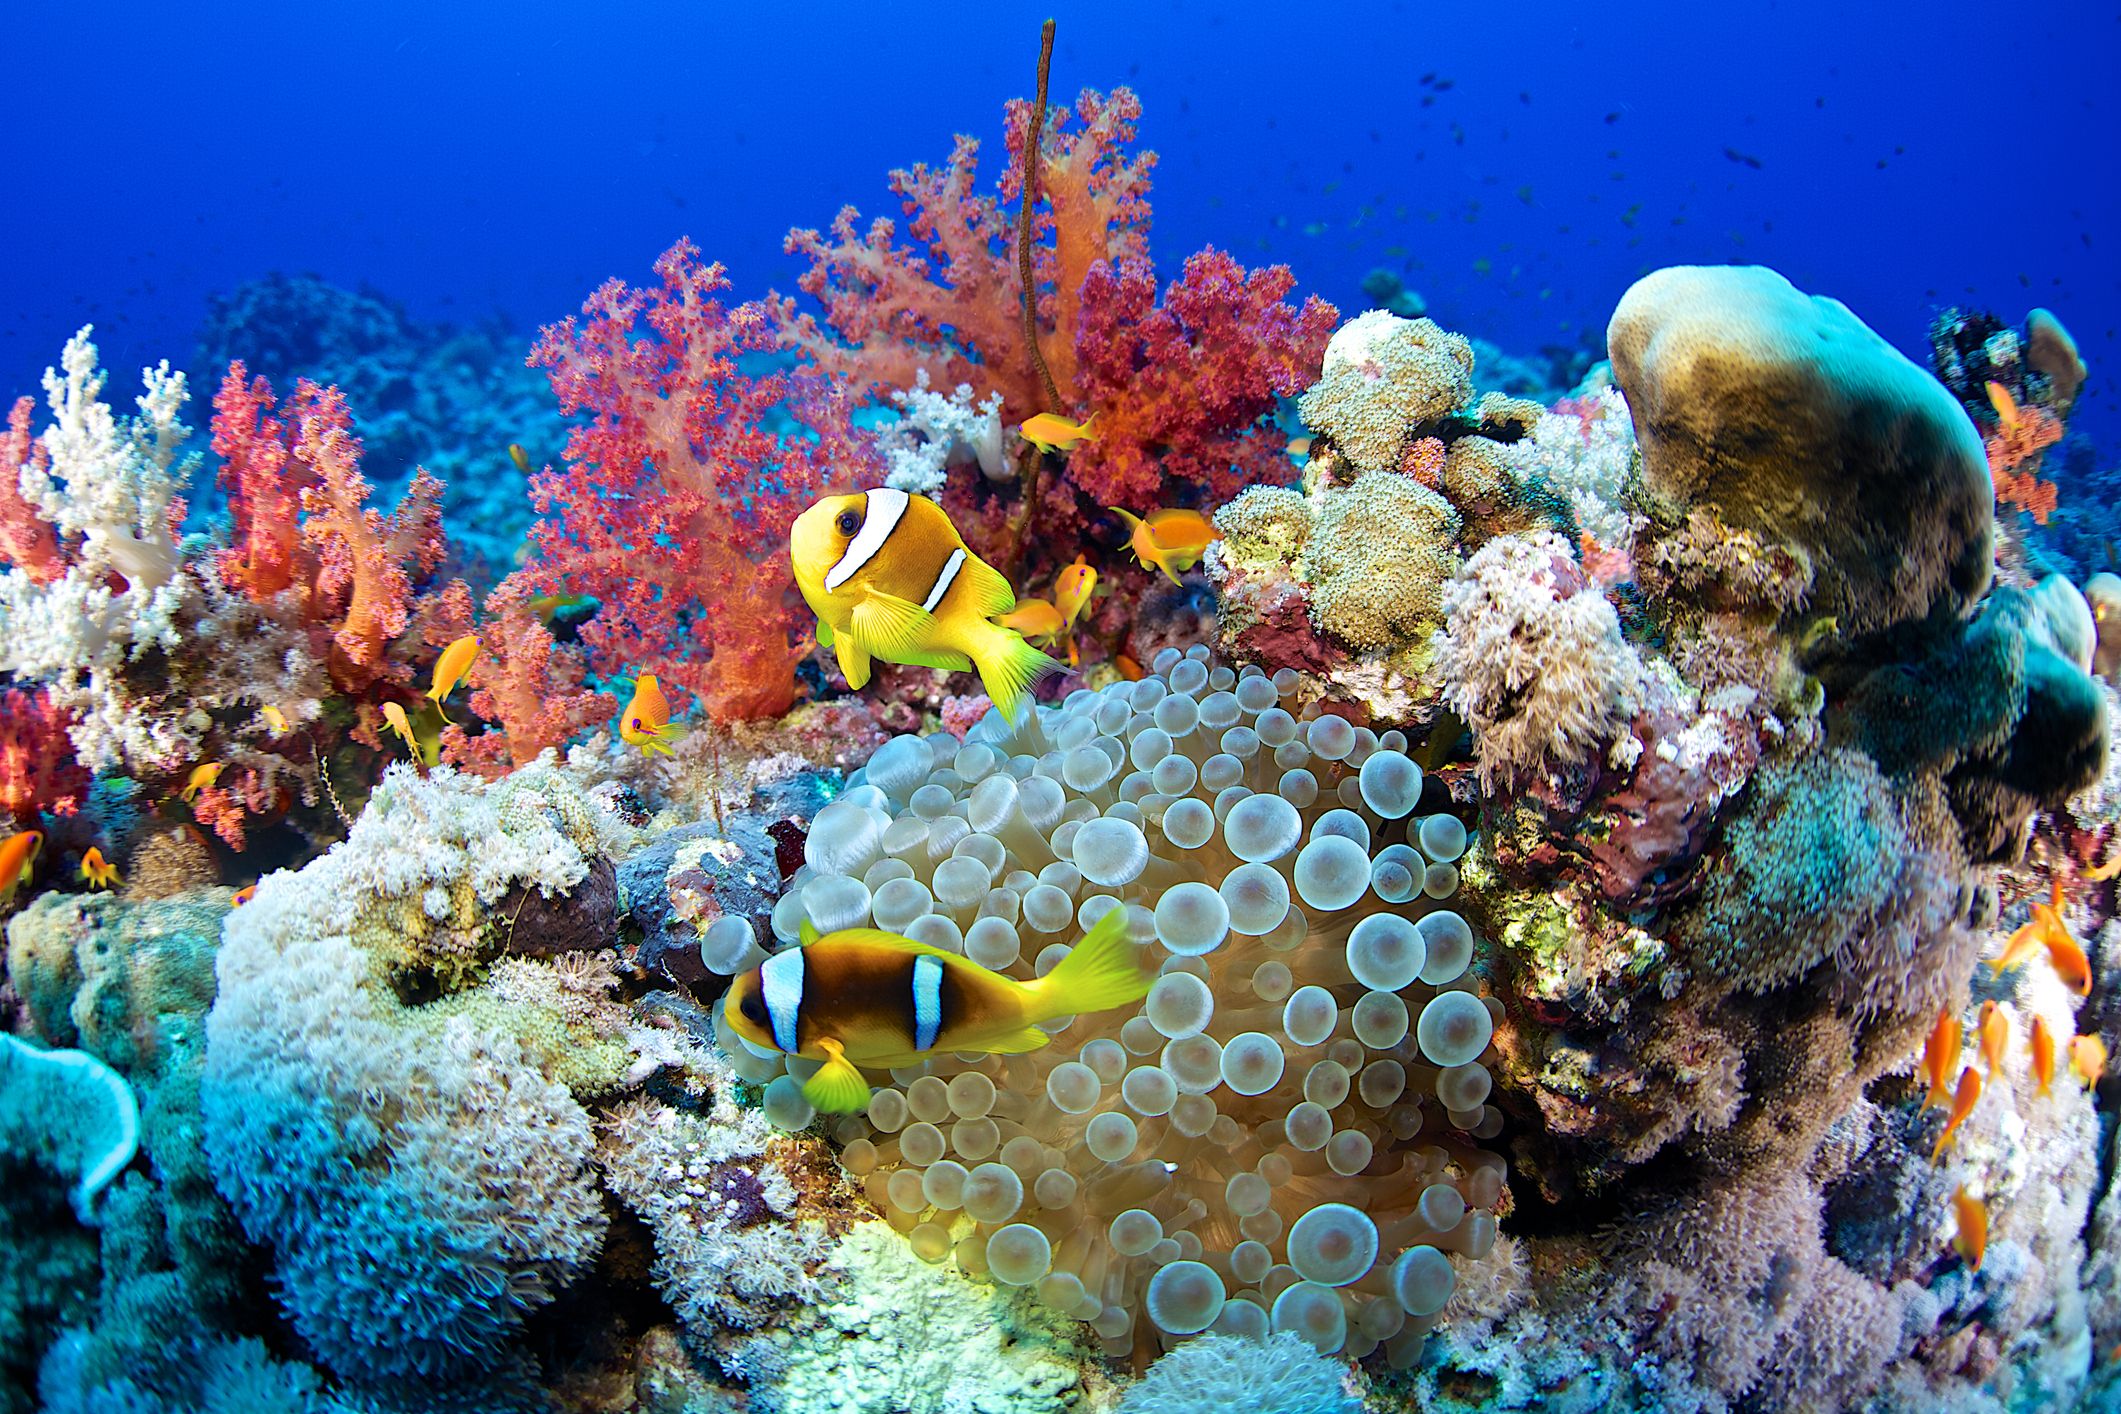 Arriba más de 66 fondo del mar con corales muy caliente - kidsdream.edu.vn